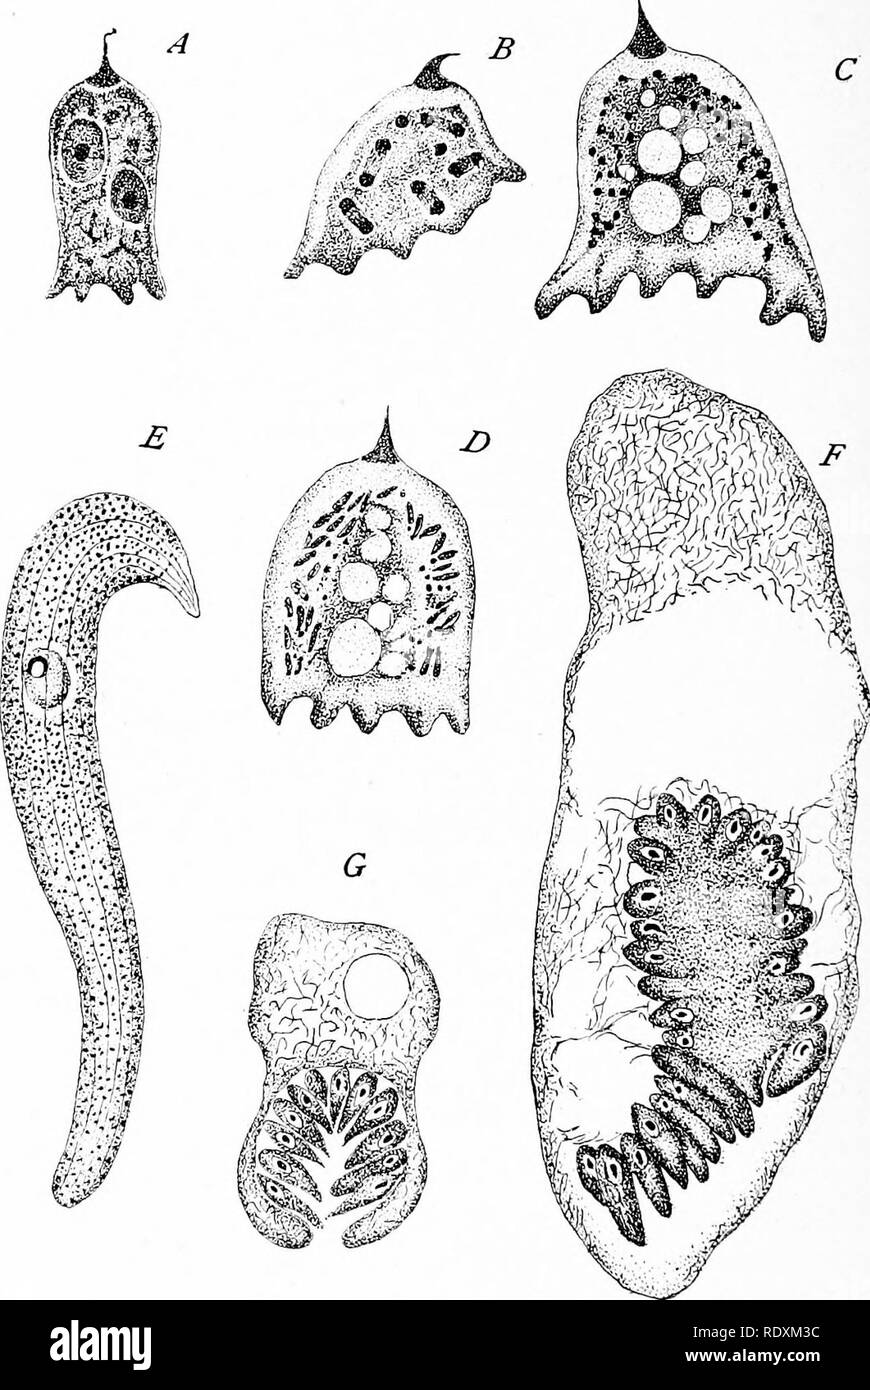 . Protozoo ?logie. Les protozoaires ; les protozoaires, pathogène. Le parasitisme 182 {gamétocytes p. ex. ascidiee Lankesteria (Monocystis), S'entraîné. (Fig. Eucoccidium Benedenia (75)) octopiana, et E. eledone). Fig. 76. Dans gregaiines schizogonie intracellulaire. .Une Eleutheroschizon dubosqui à D,, Brasil, intes- tinal parasite d'Sooloplos armiger, montrant la multiplication des noyaux (A, B) et formation de mérozoïtes (C, JO). (Après le Brésil.) e à &Lt ; ?, Schizocj'stis sipunculi, Dogiel ; E, d'organes adultes- isme ; F, G ; formation mérozoïte, mature mérozoïtes dans brood canity. (Après Dogiel.) dans d'autres cas, les processus de schizogonie Banque D'Images